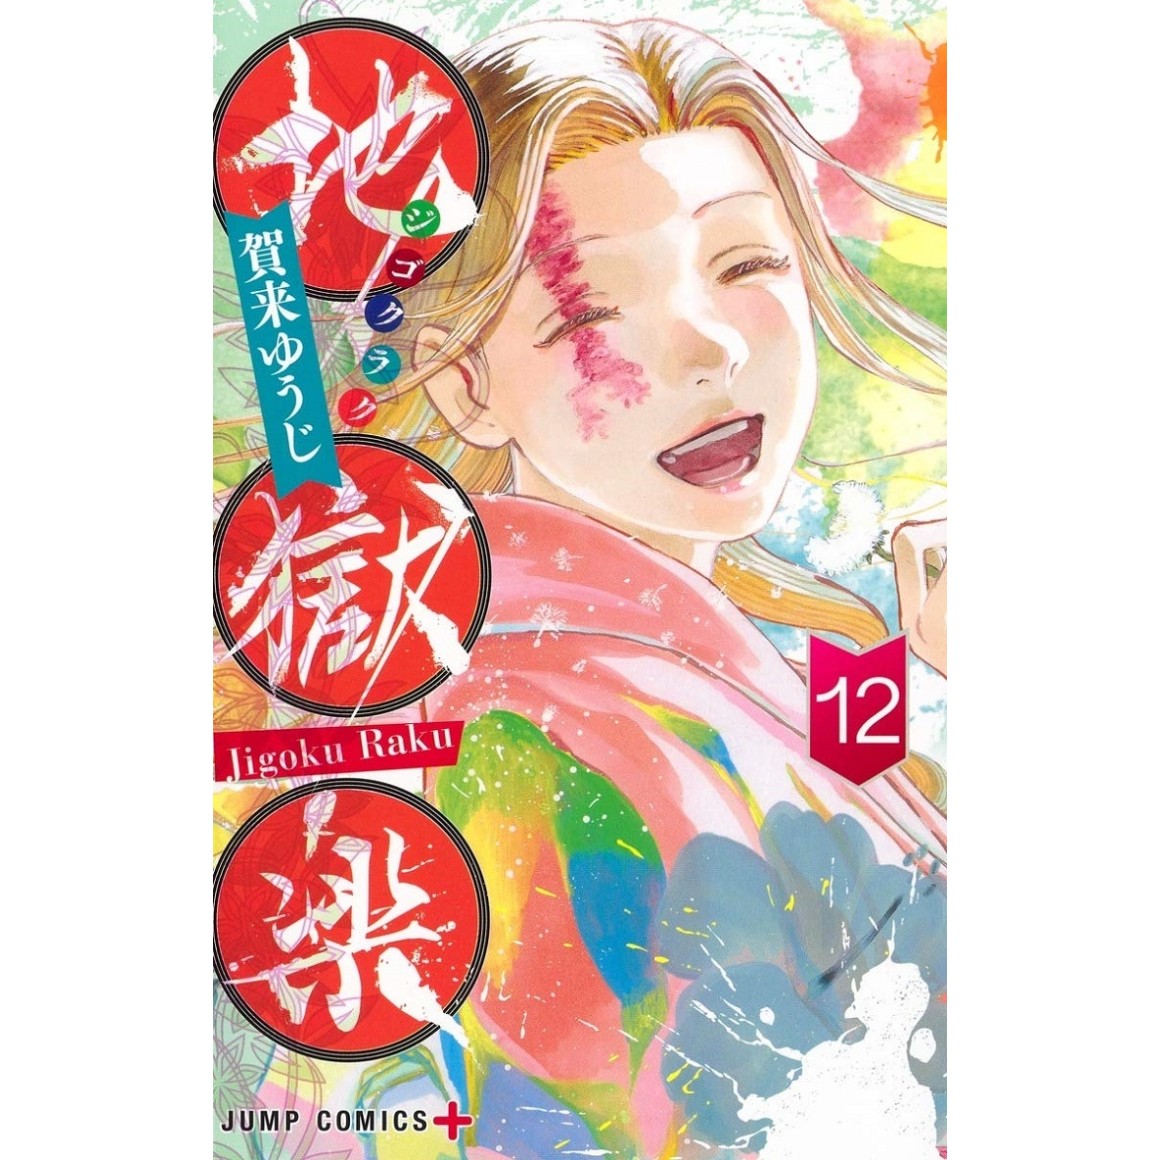 Panini publicará o mangá 'Hell's Paradise: Jigokuraku' - Chuva de